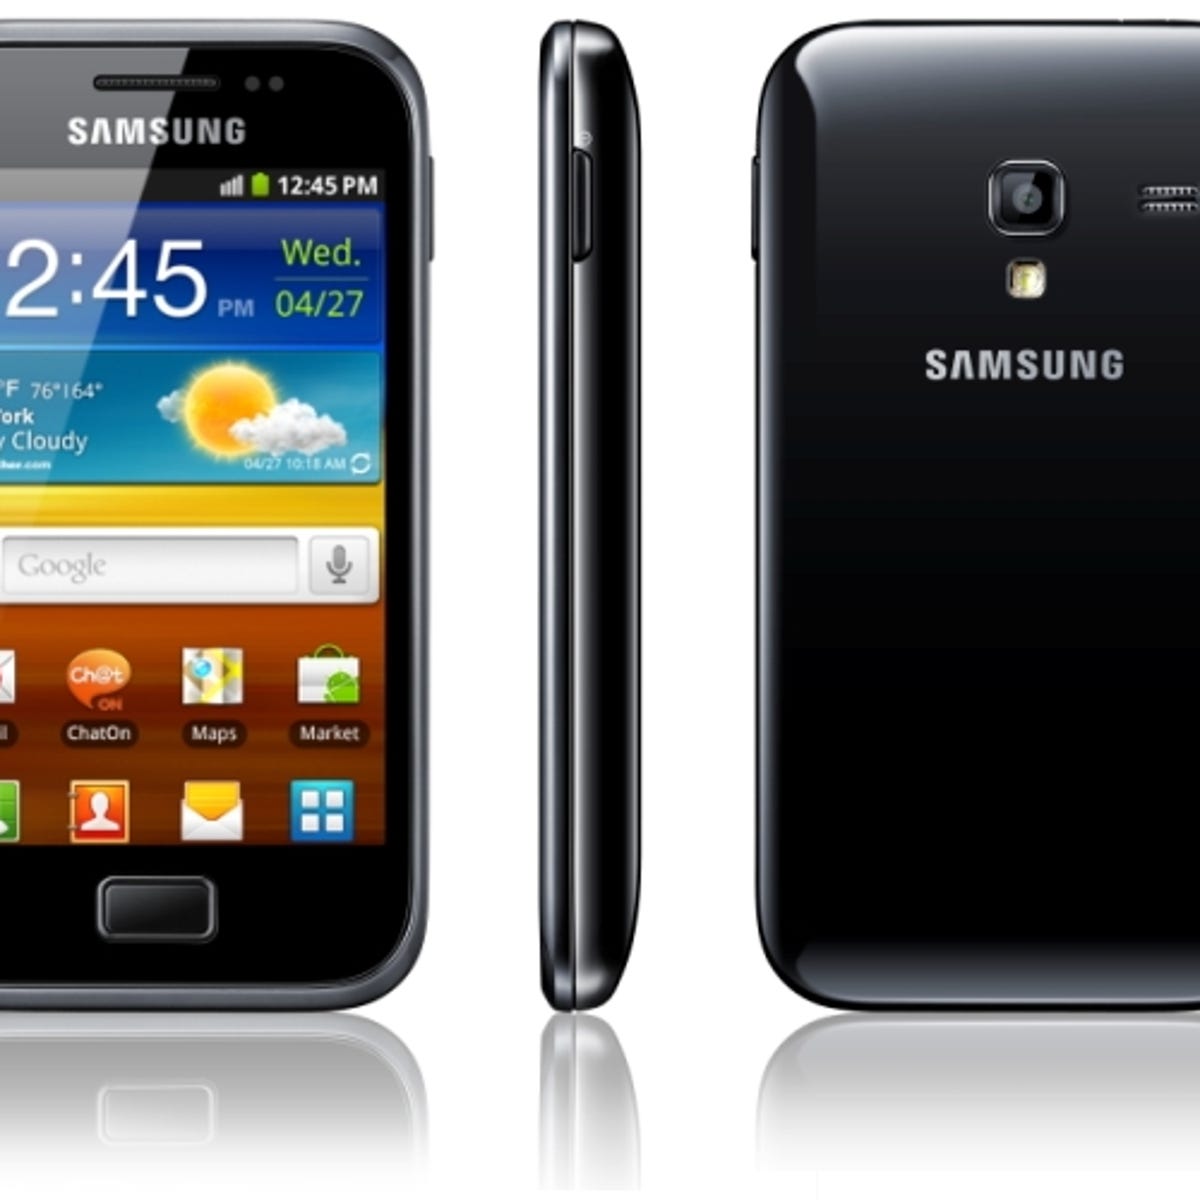 Samsung Galaxy Mini 2 gt-s6500. Samsung gt-s7500. Samsung Galaxy Ace Plus. Samsung Galaxy Ace 2. Телефон самсунг андроид 2